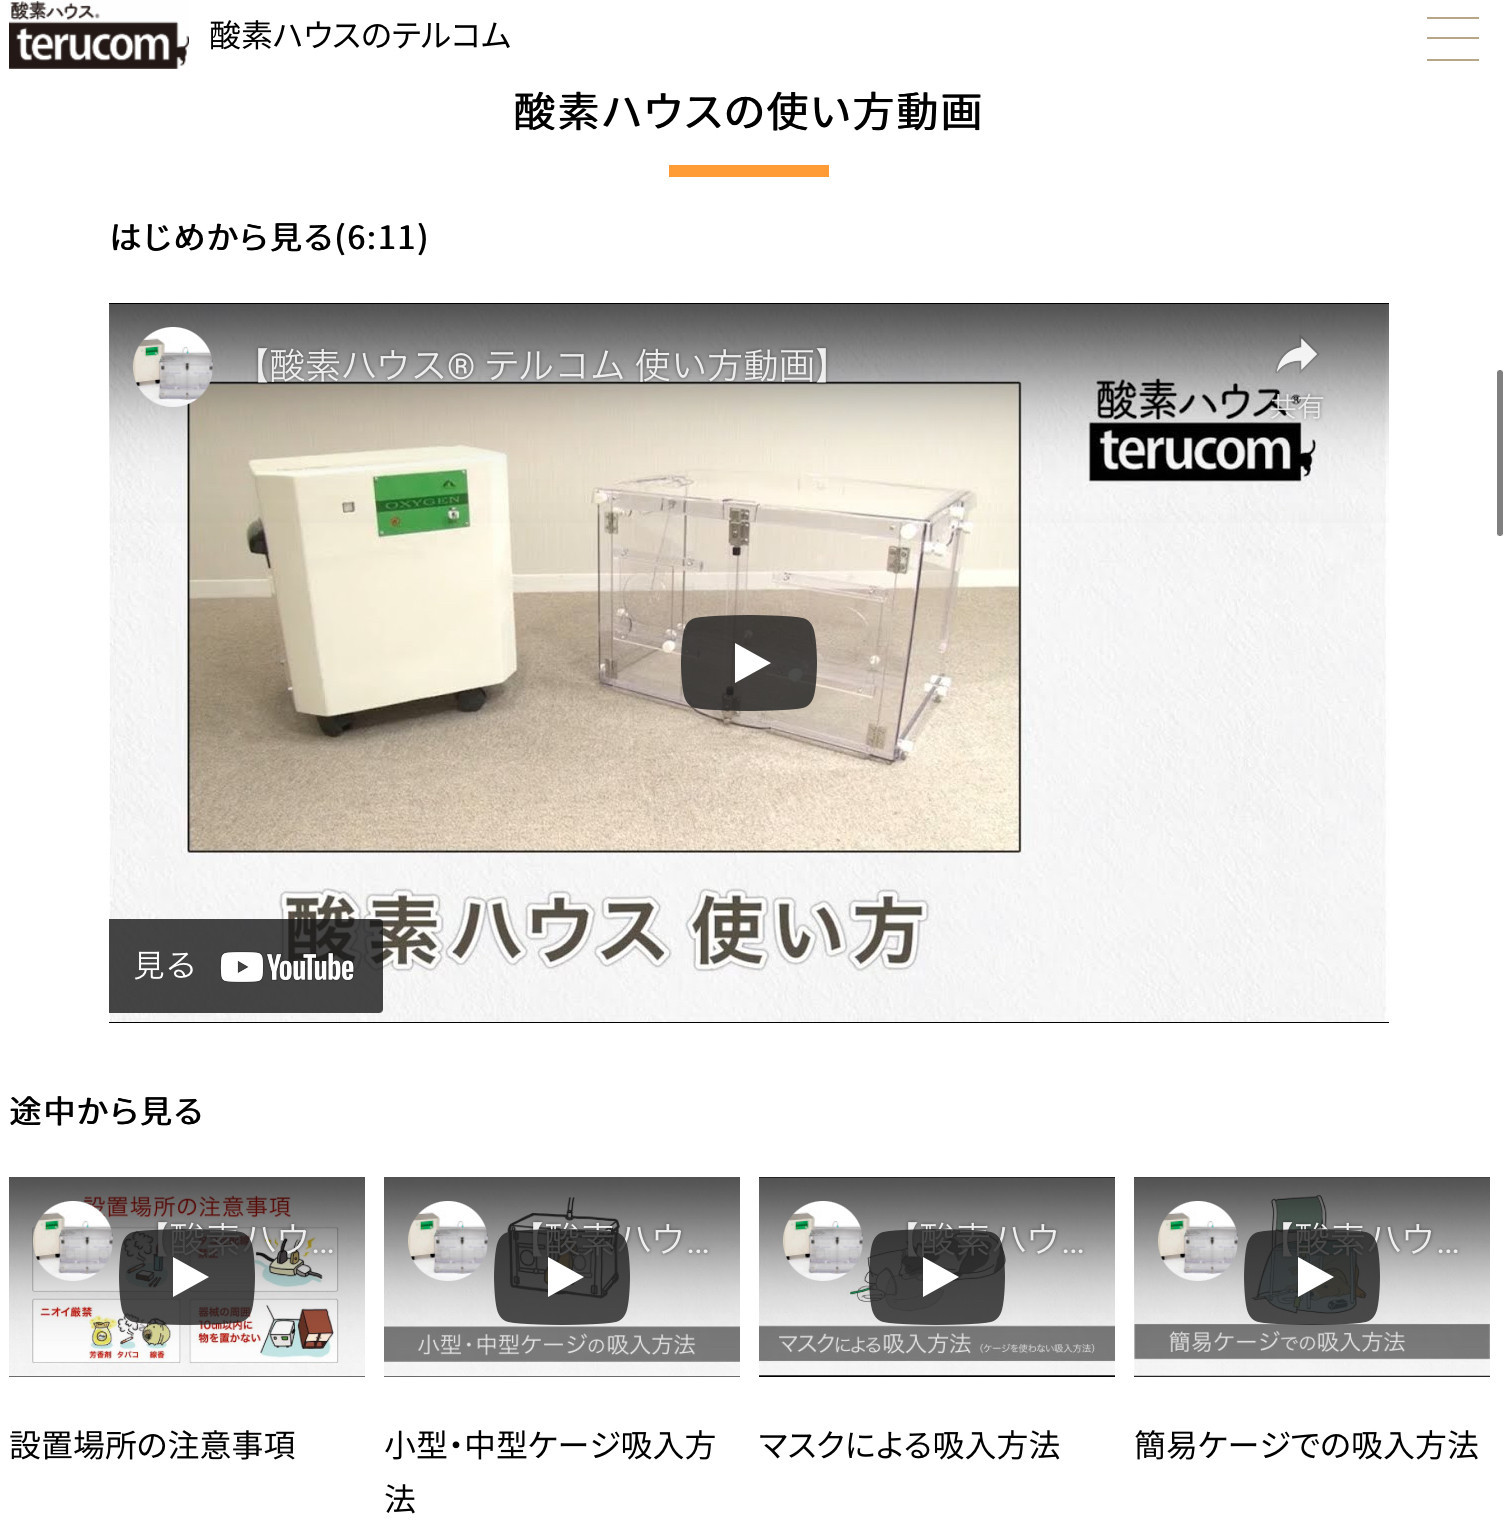 酸素濃縮器、酸素ハウス®︎の使い方動画がterucomホームページページにて見られます。